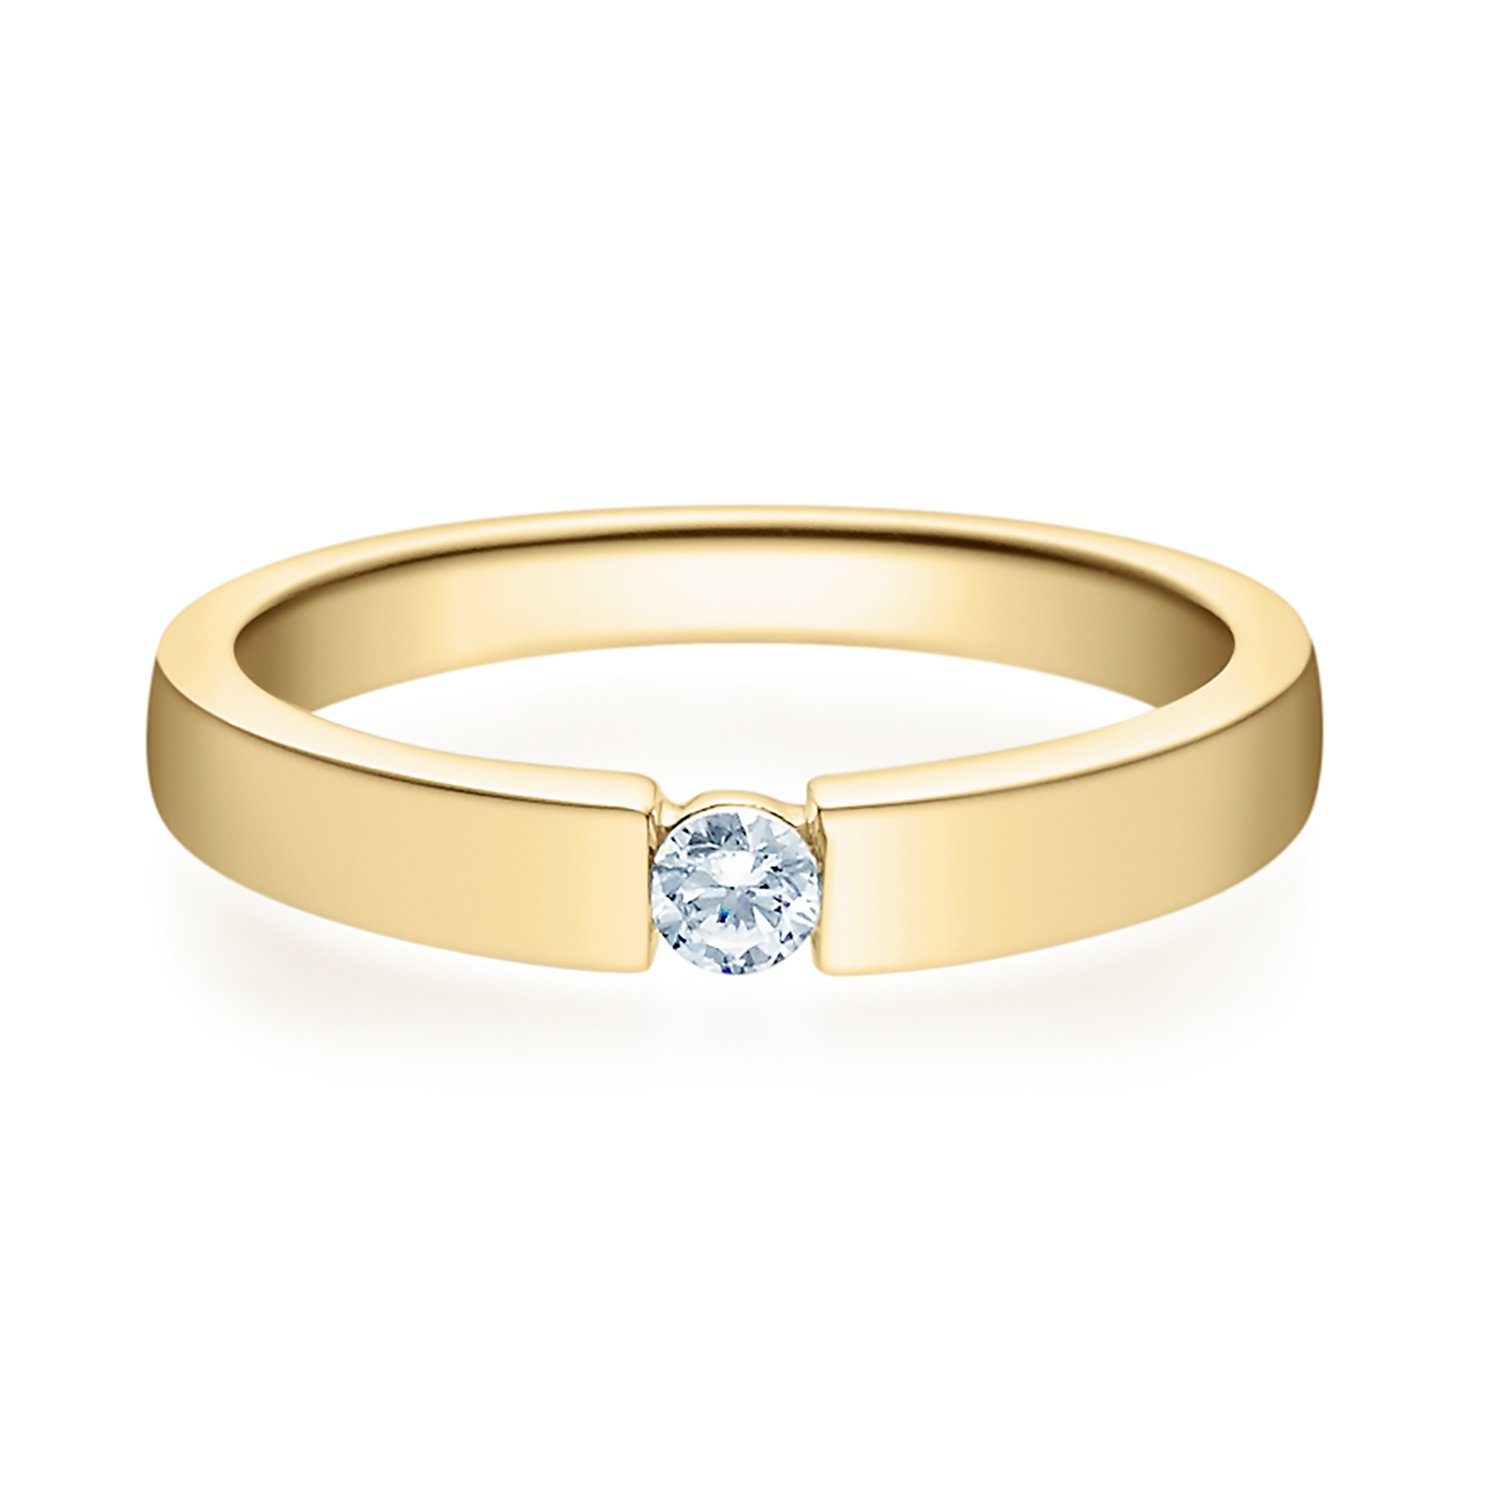 Stella-Jewellery Verlobungsring 585er Verlobungsring Gelbgold 0,15 ct. (inkl. Etui), mit Brillant 0,10ct. - Poliert